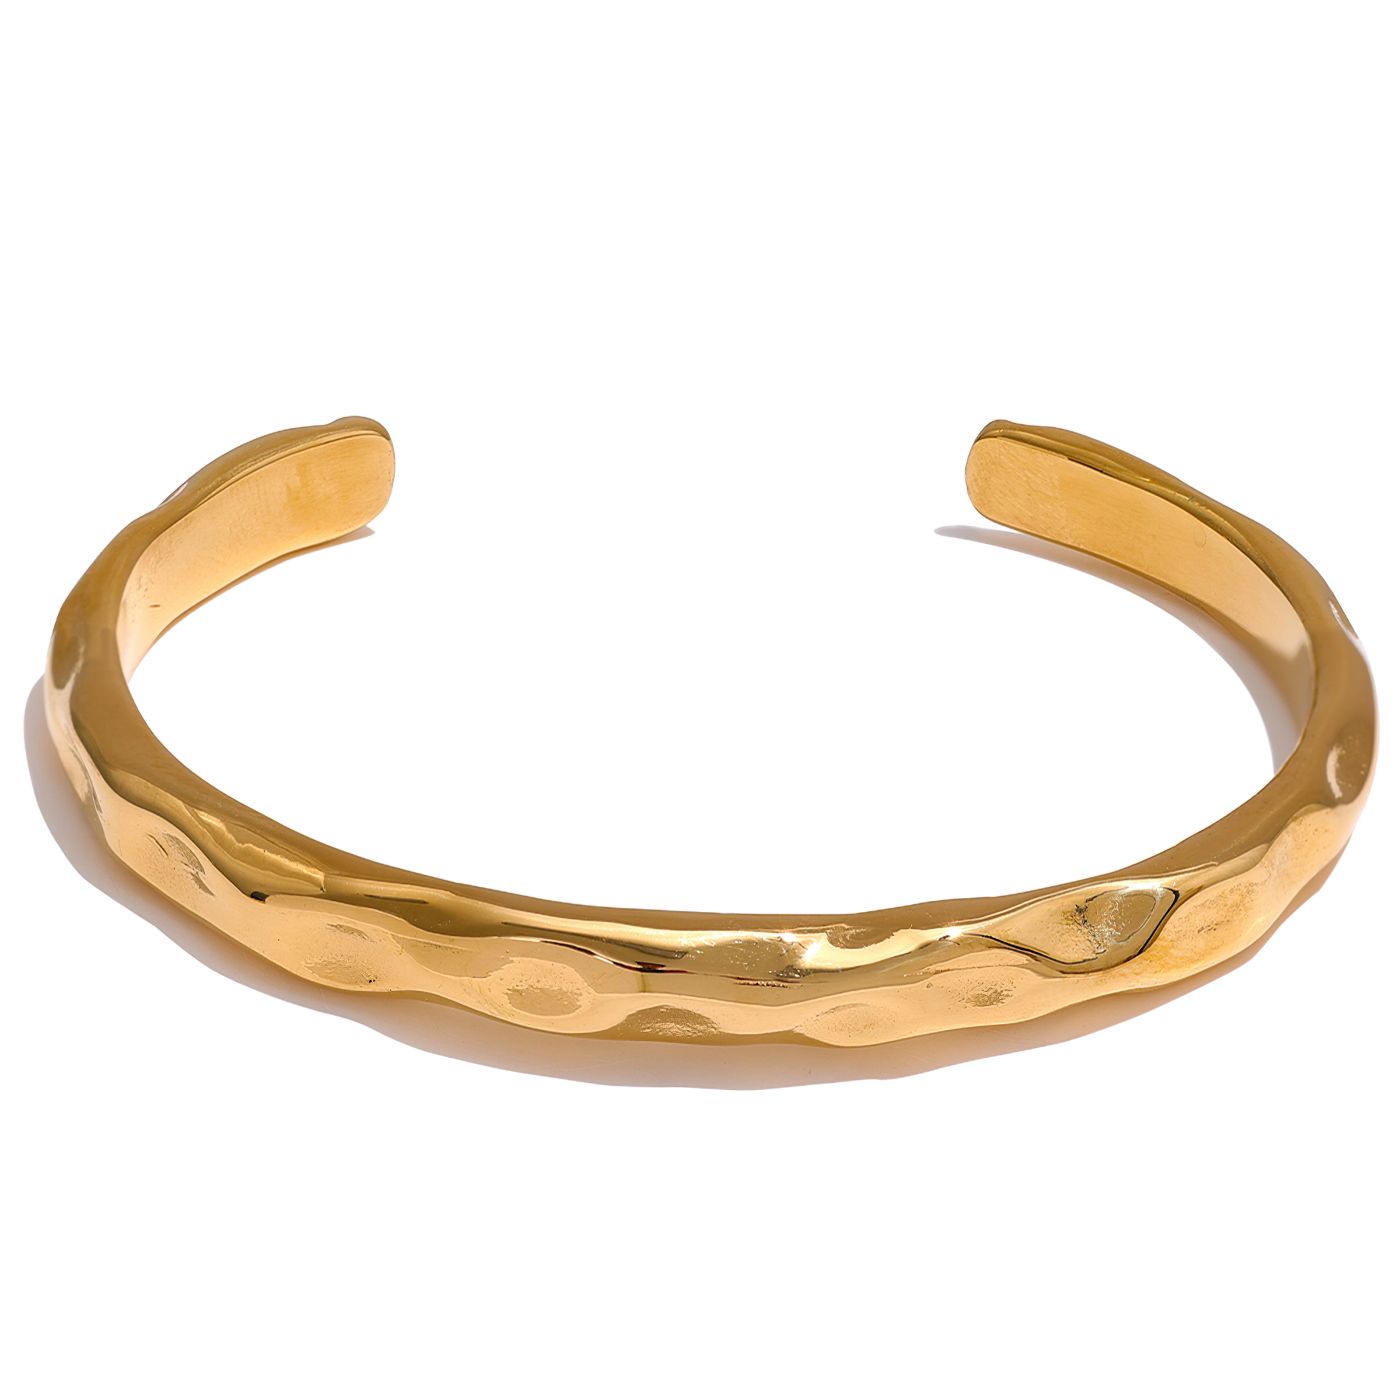 Bracelete Cuff Orgânico Irregular Banhado a Ouro 18k - Aspekto 1